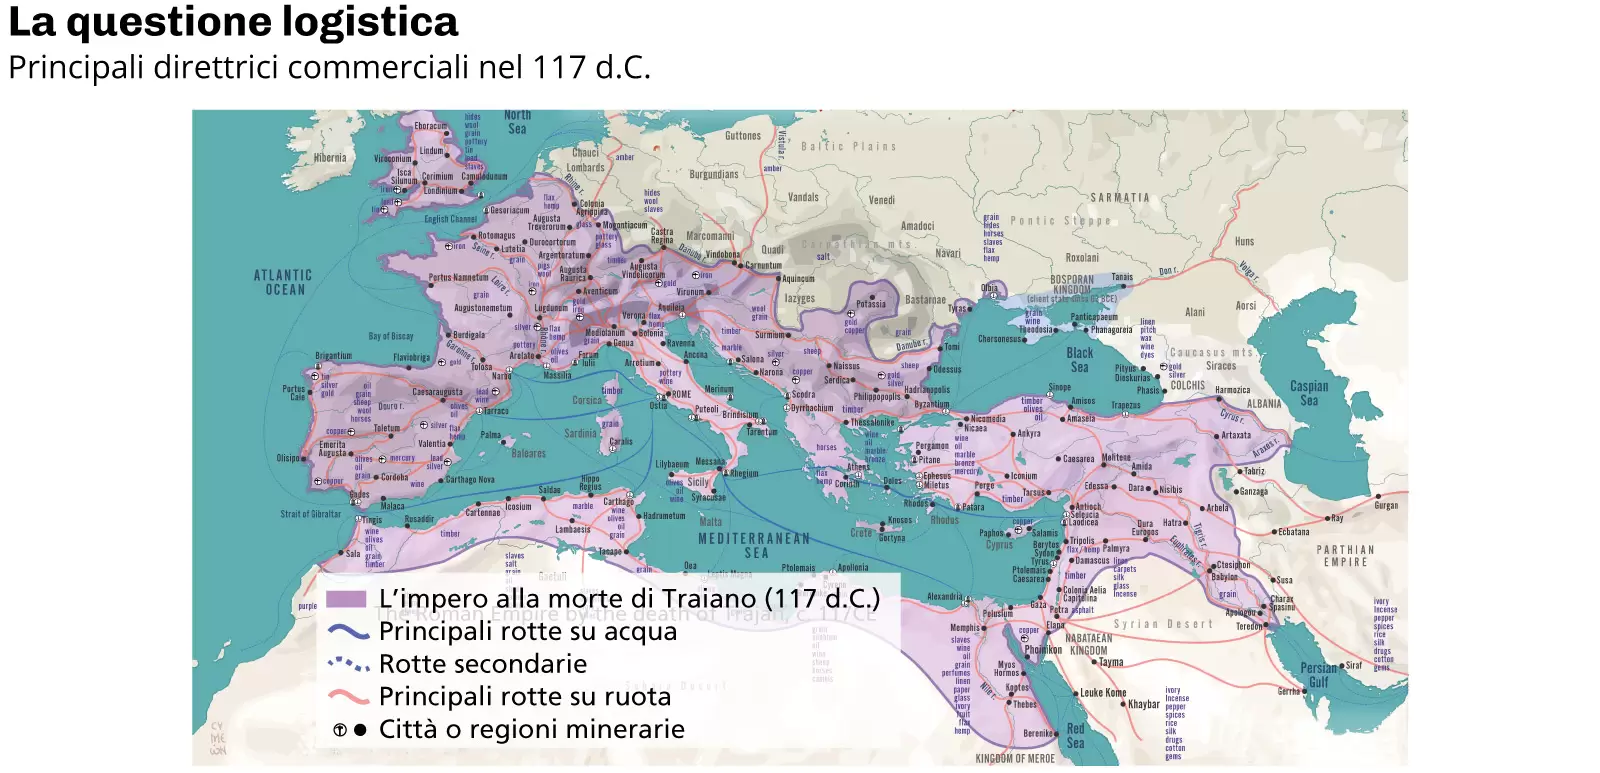 Principali direttrici commerciali nel 117 d.C.